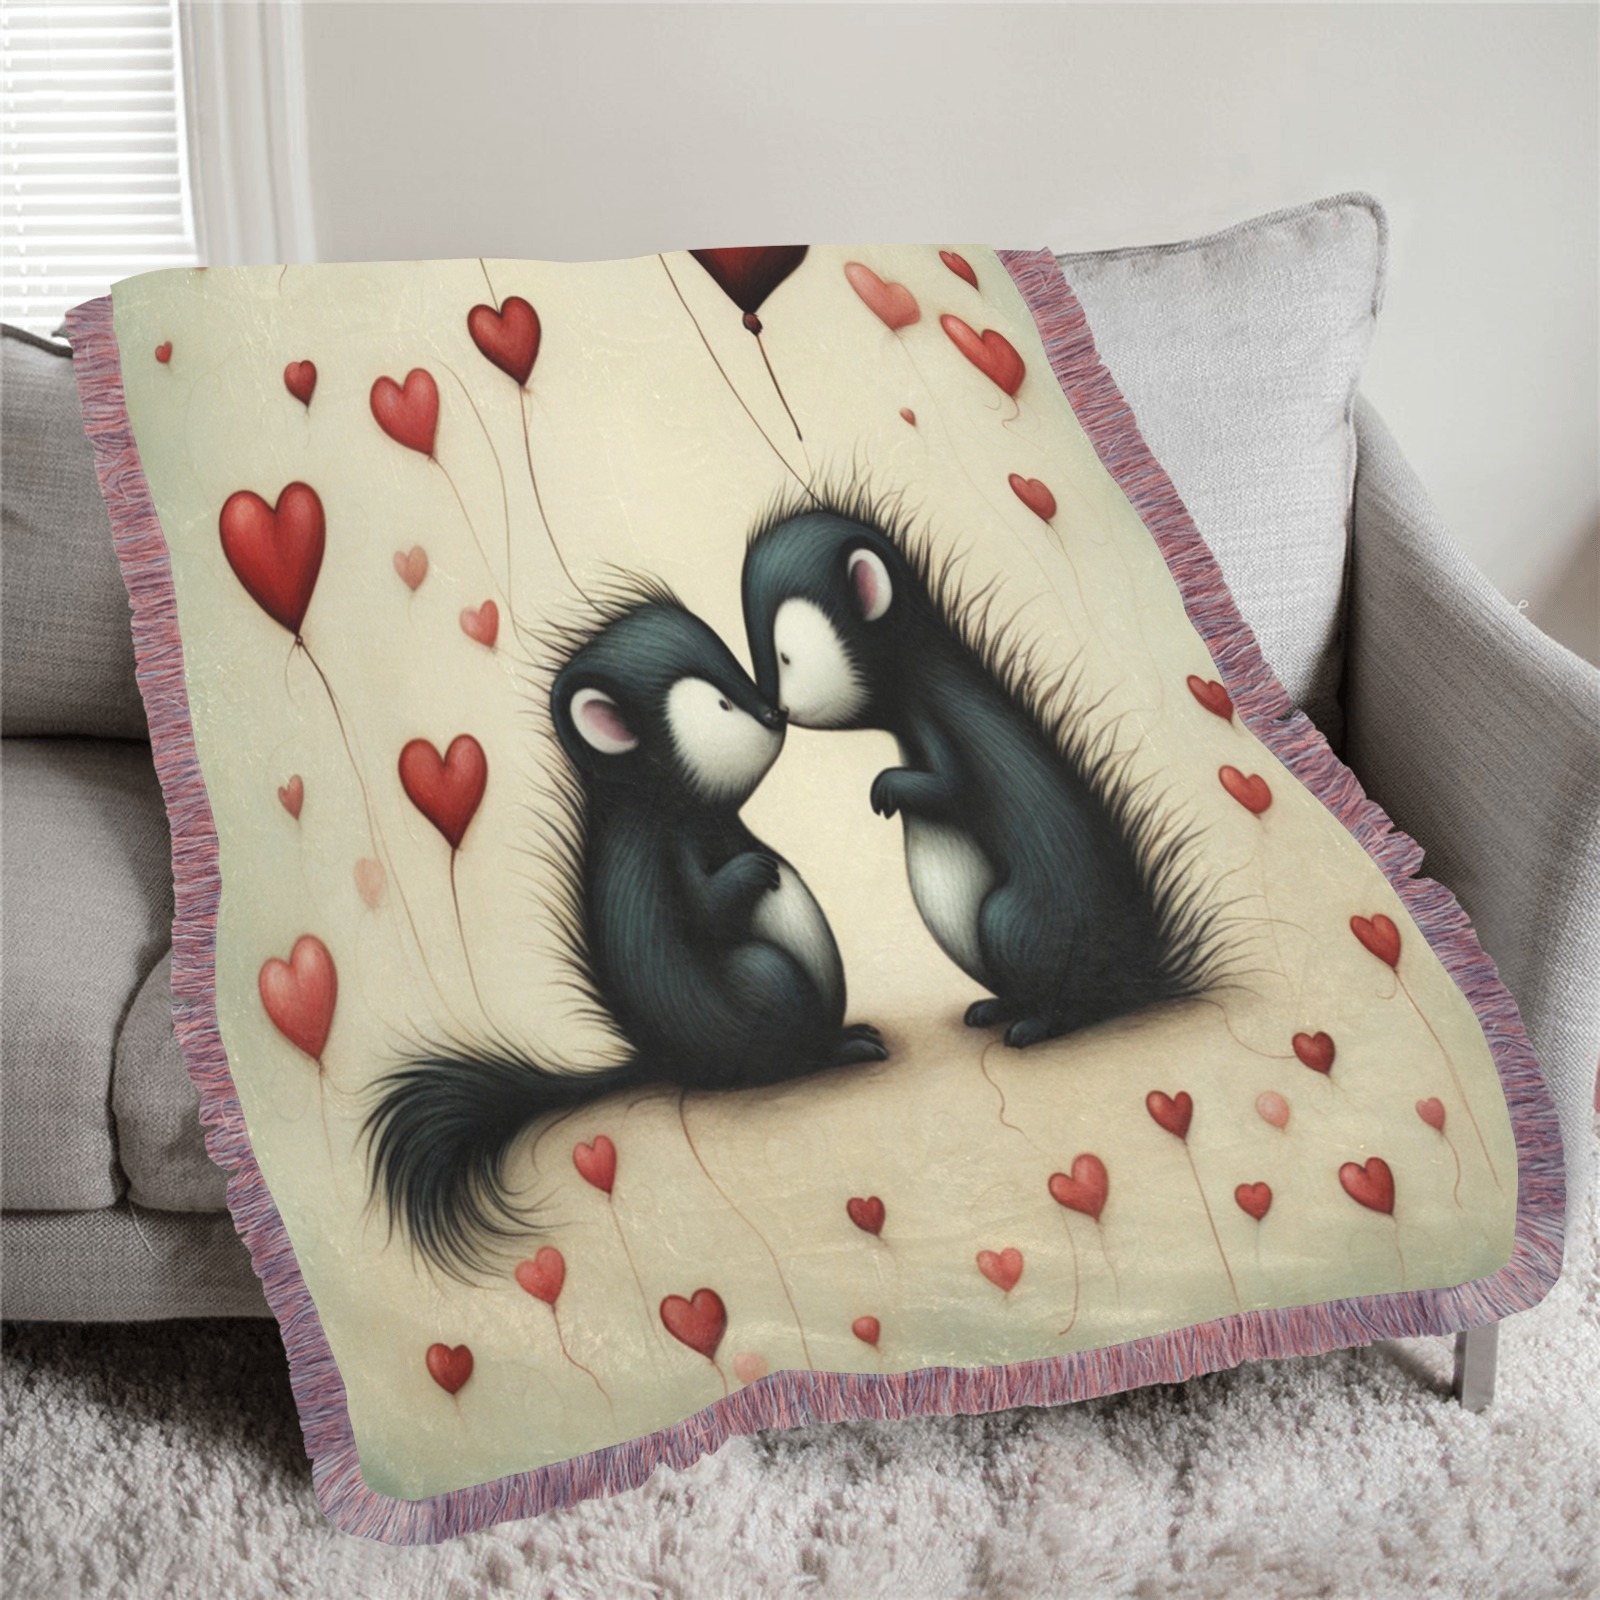 Skunk Love 1 Ultra-Soft Fringe Blanket 40"x50" (Mixed Pink)